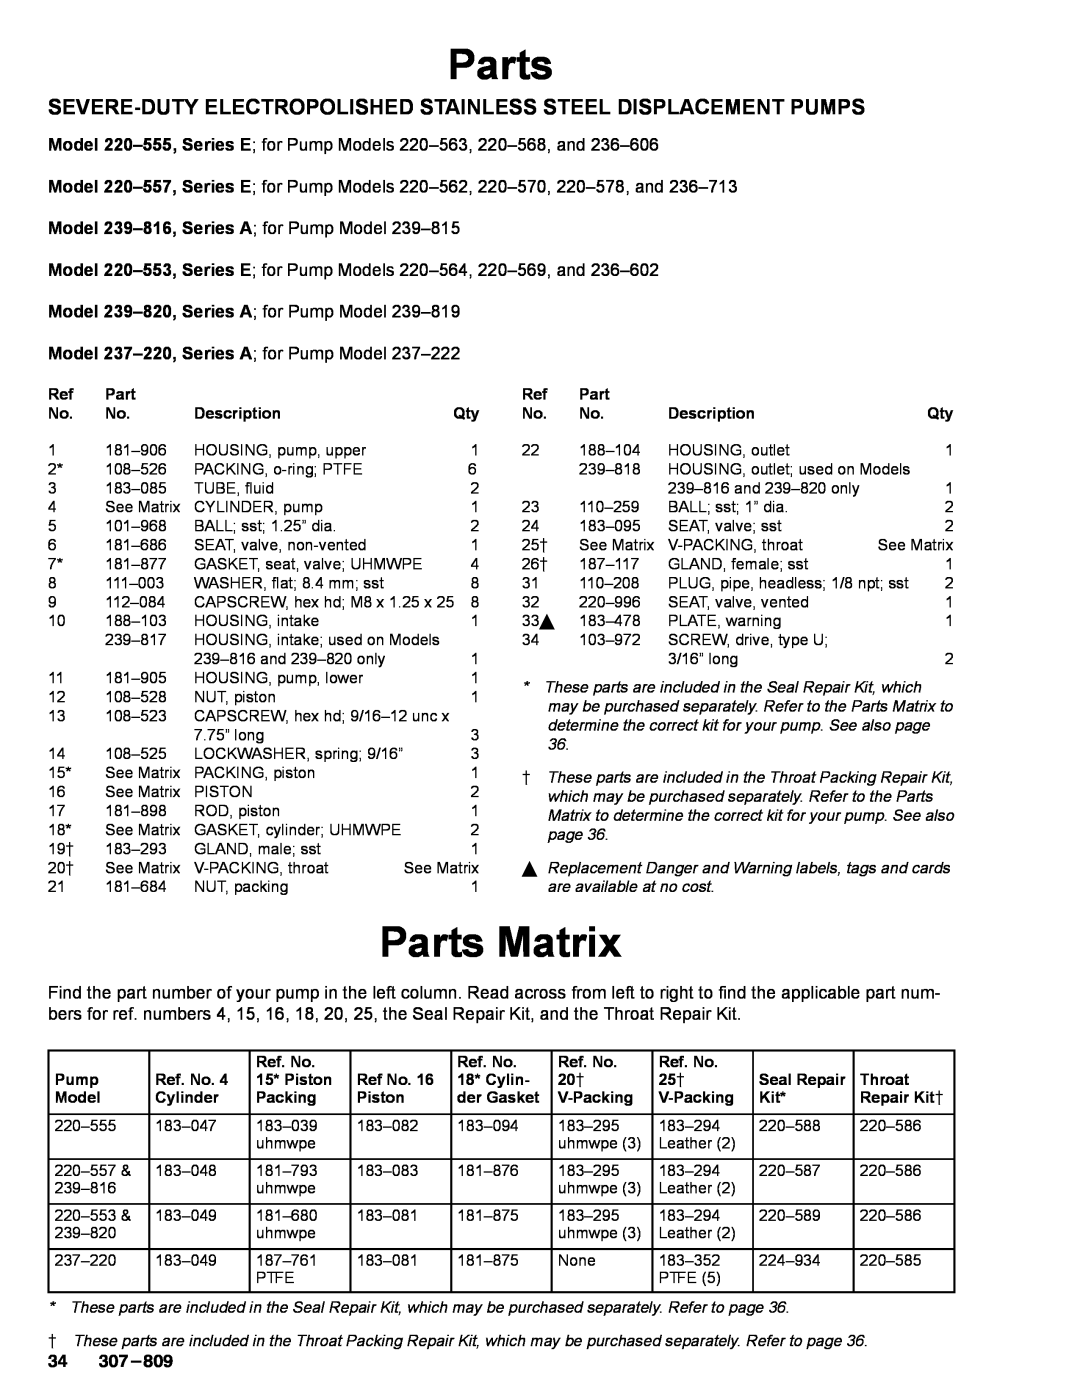 Graco 220-569 manual Parts Matrix, Model 239-820,Series A for Pump Model 